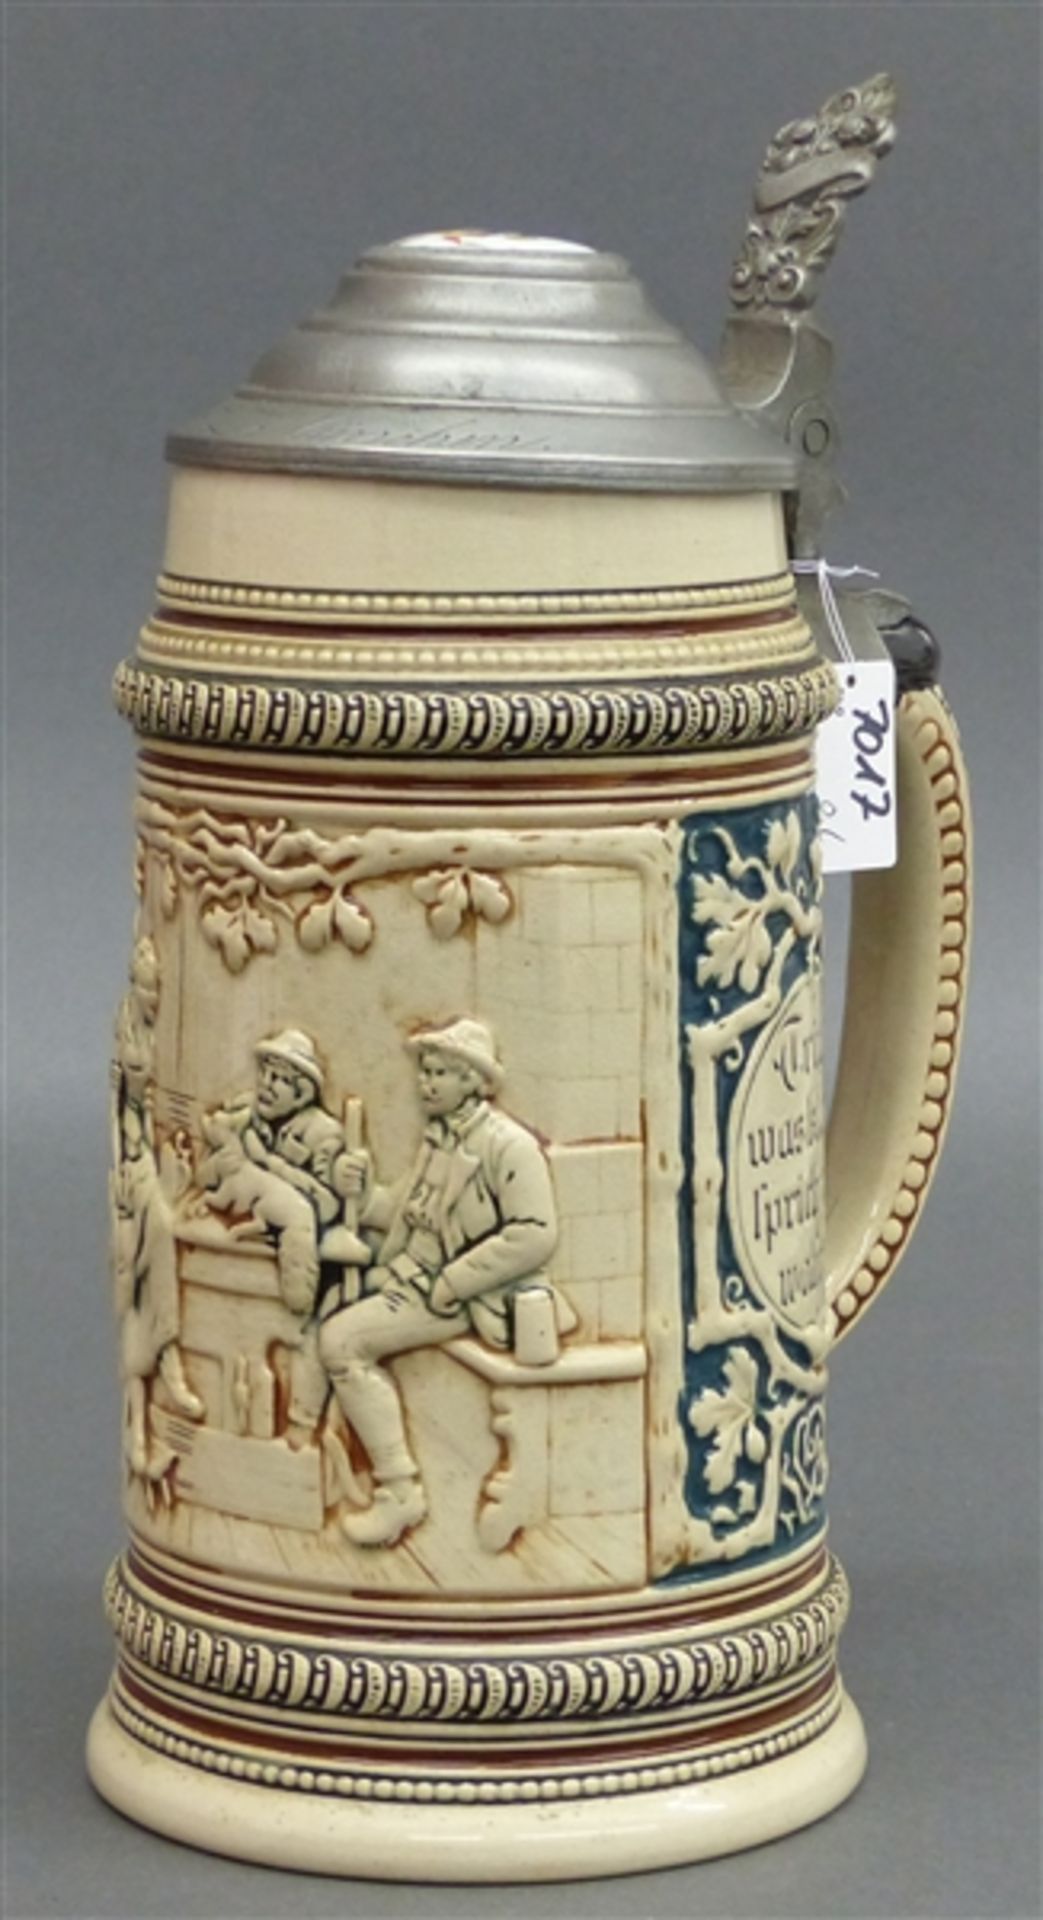 Bierkrug, um 1900 Keramik, Reliefdekor, Wirtshausszene, Zinndeckel mit Porzellanaufsatz "Münchner